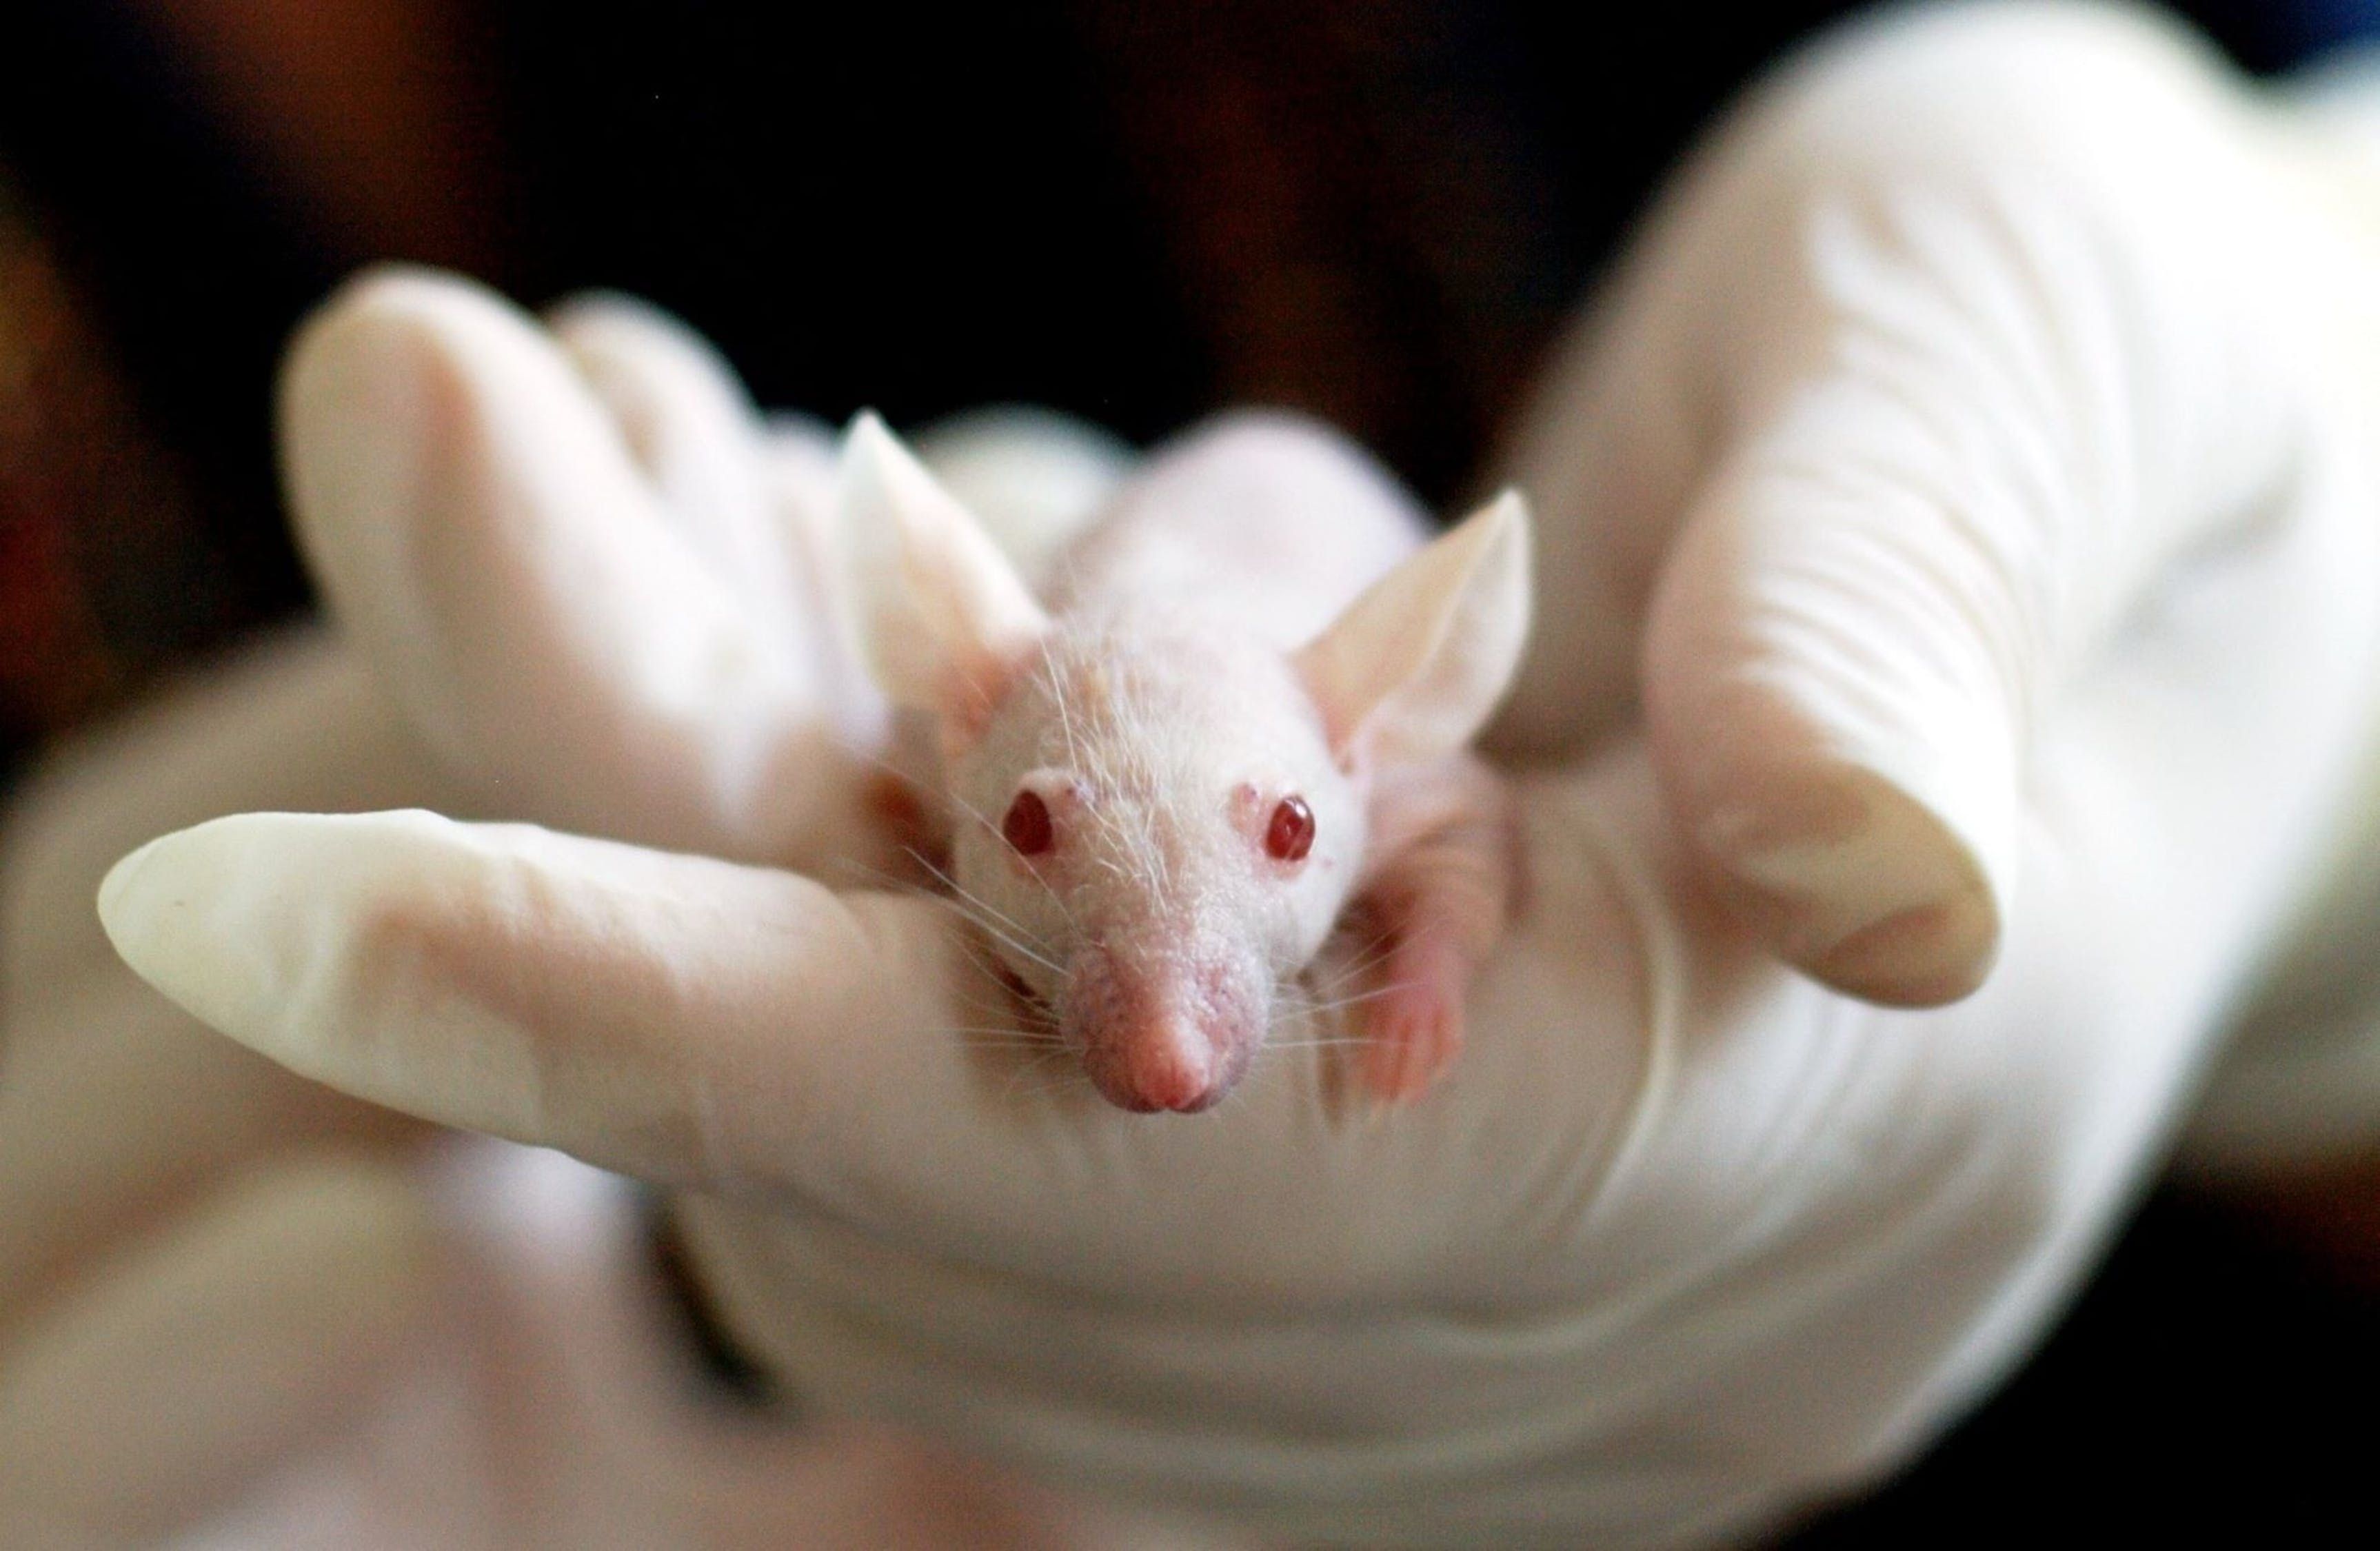 За допомогою ультразвуку вдалося повністю знищити рак у піддослідних мишей